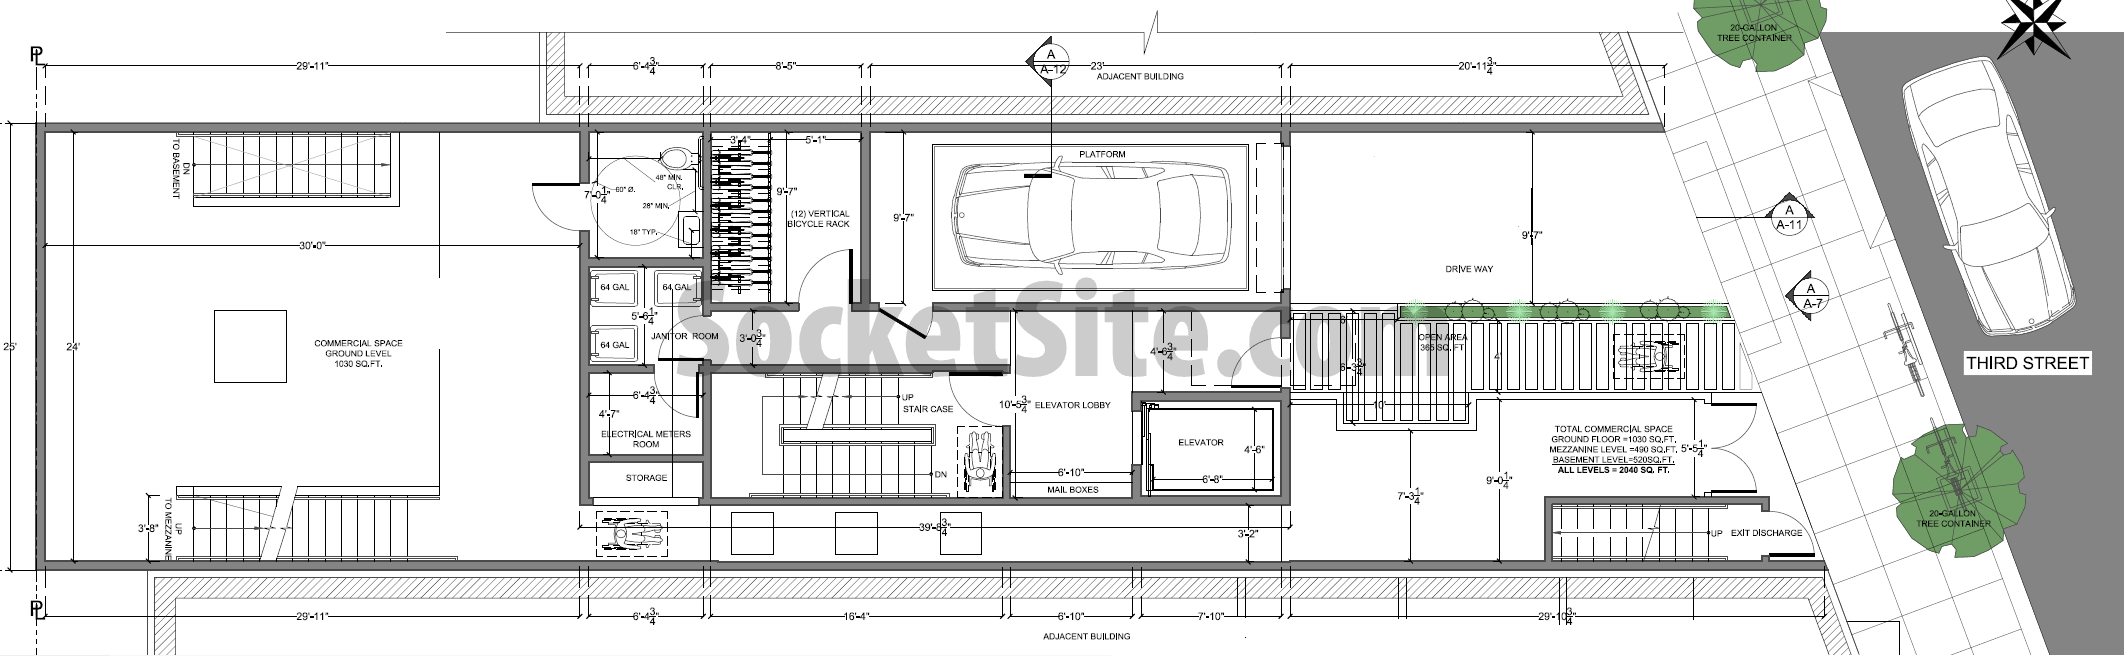 4128 Third Street Ground Floor Plan